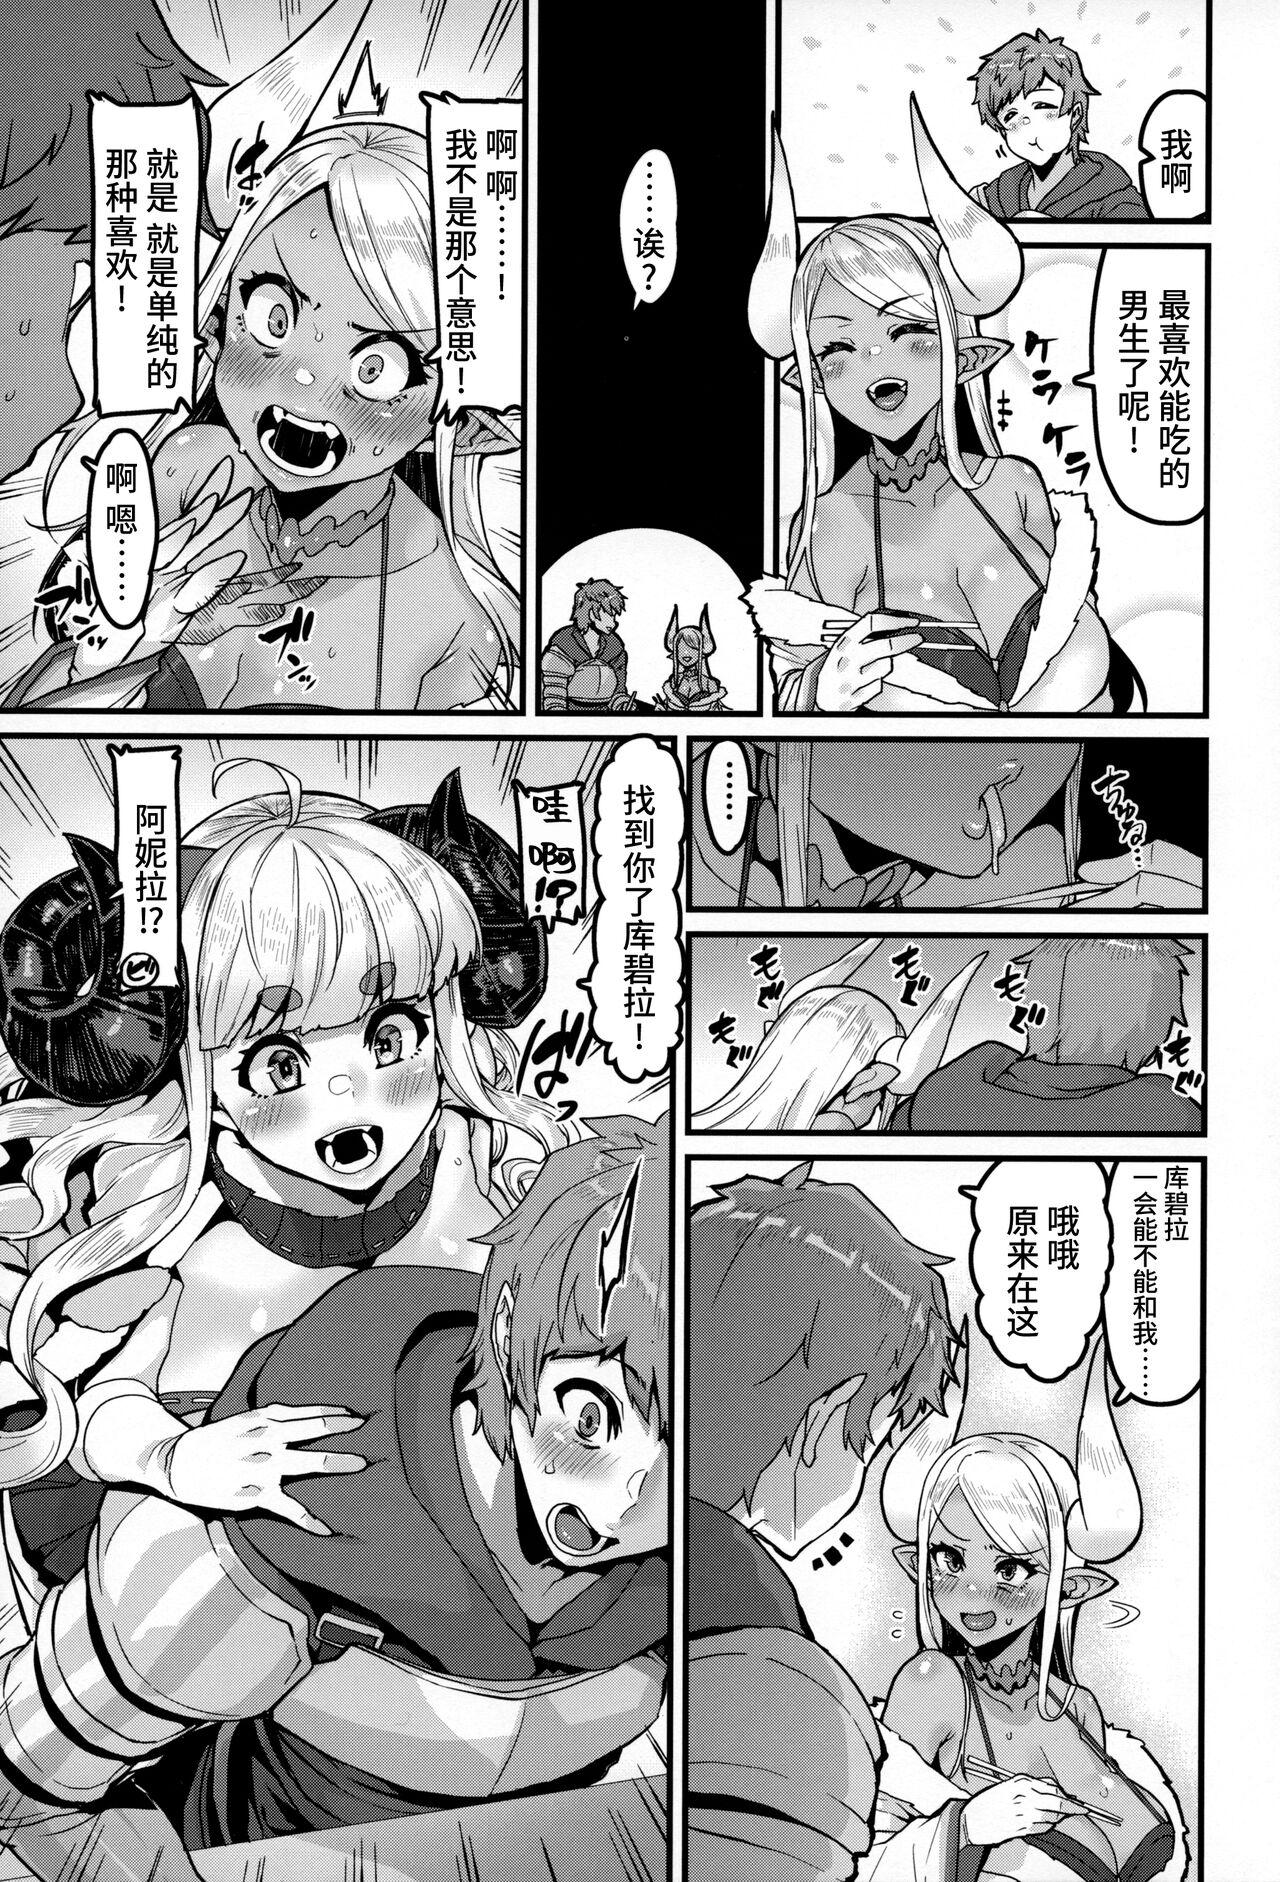 Gozada Ama Ama Shimashou ne - Granblue fantasy Flash - Page 5